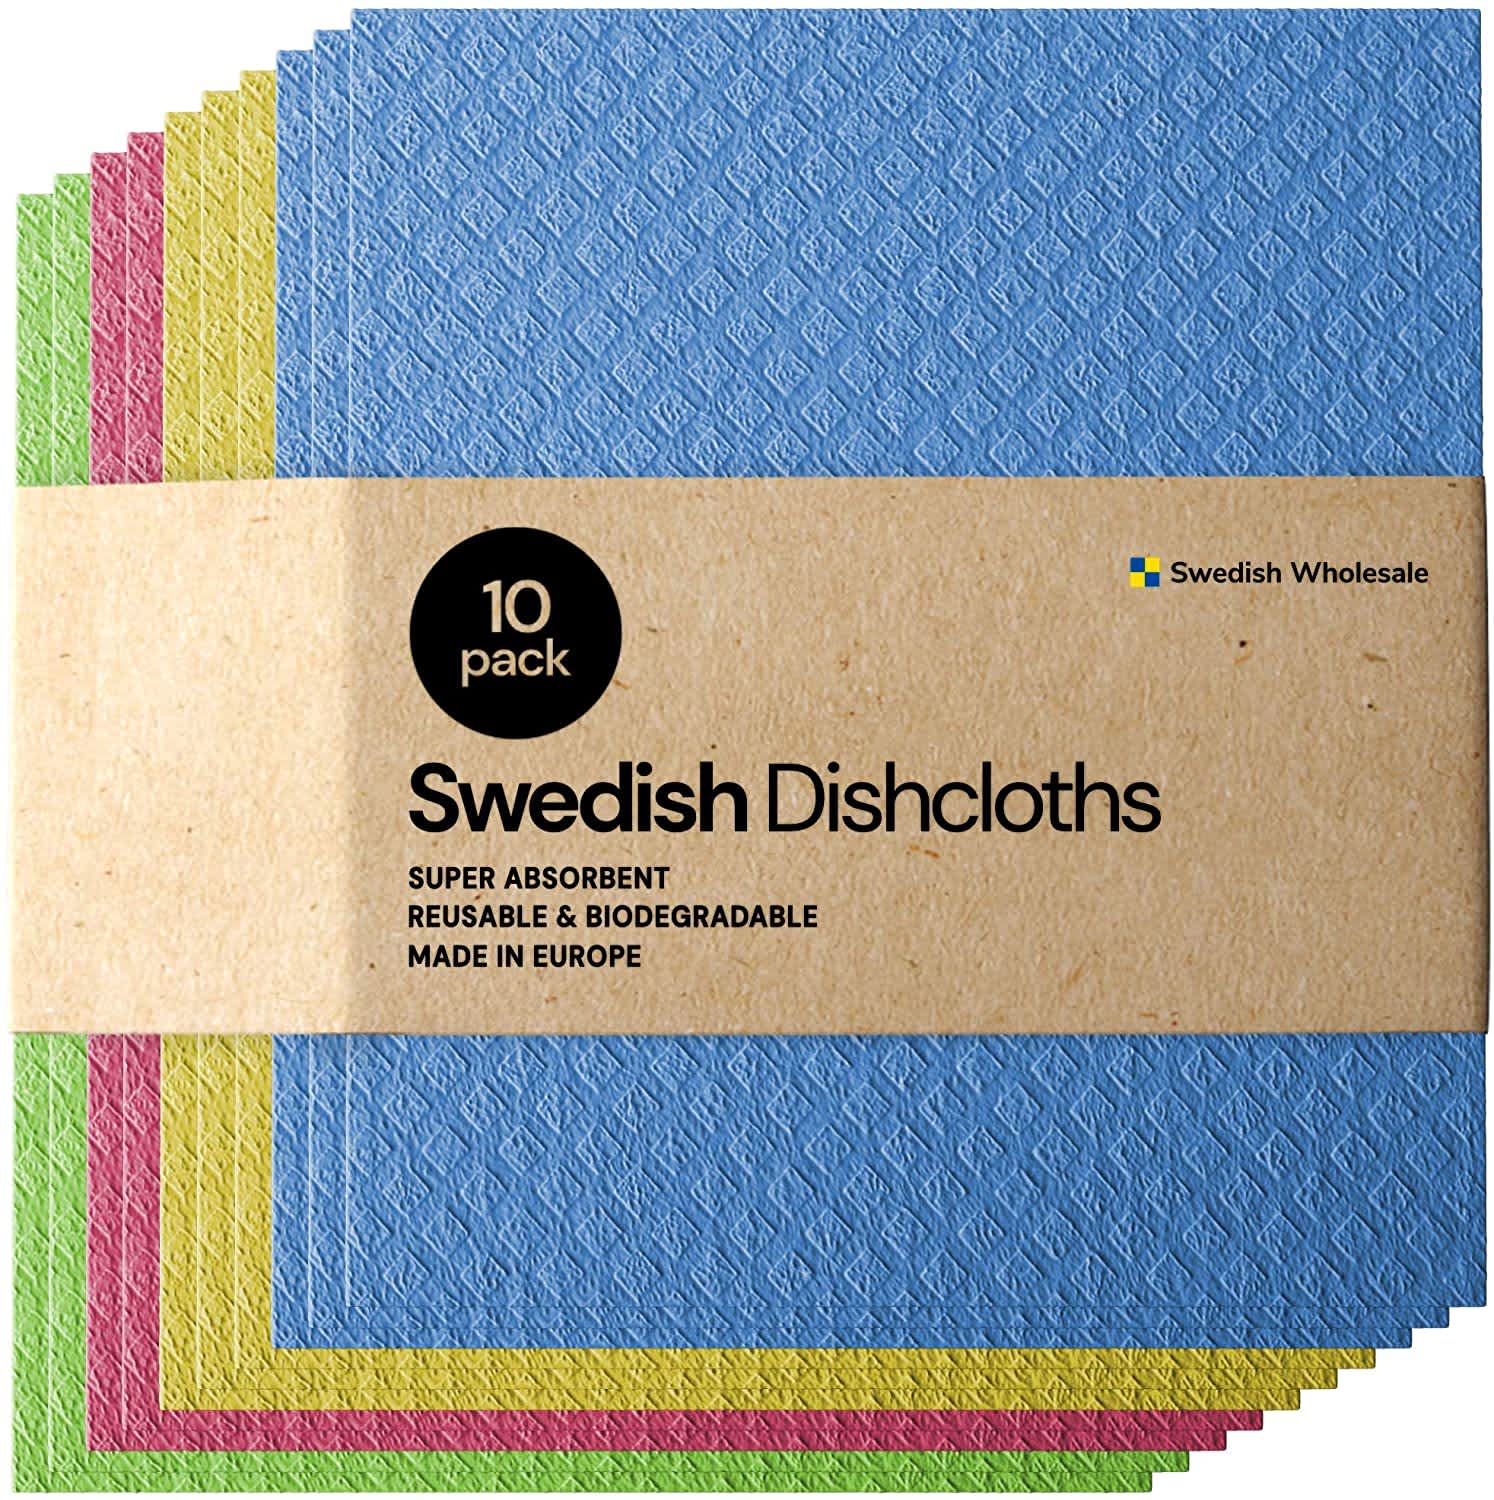 10 Best Dish Towels 2021 — Flour Sack, Cotton, Swedish & More